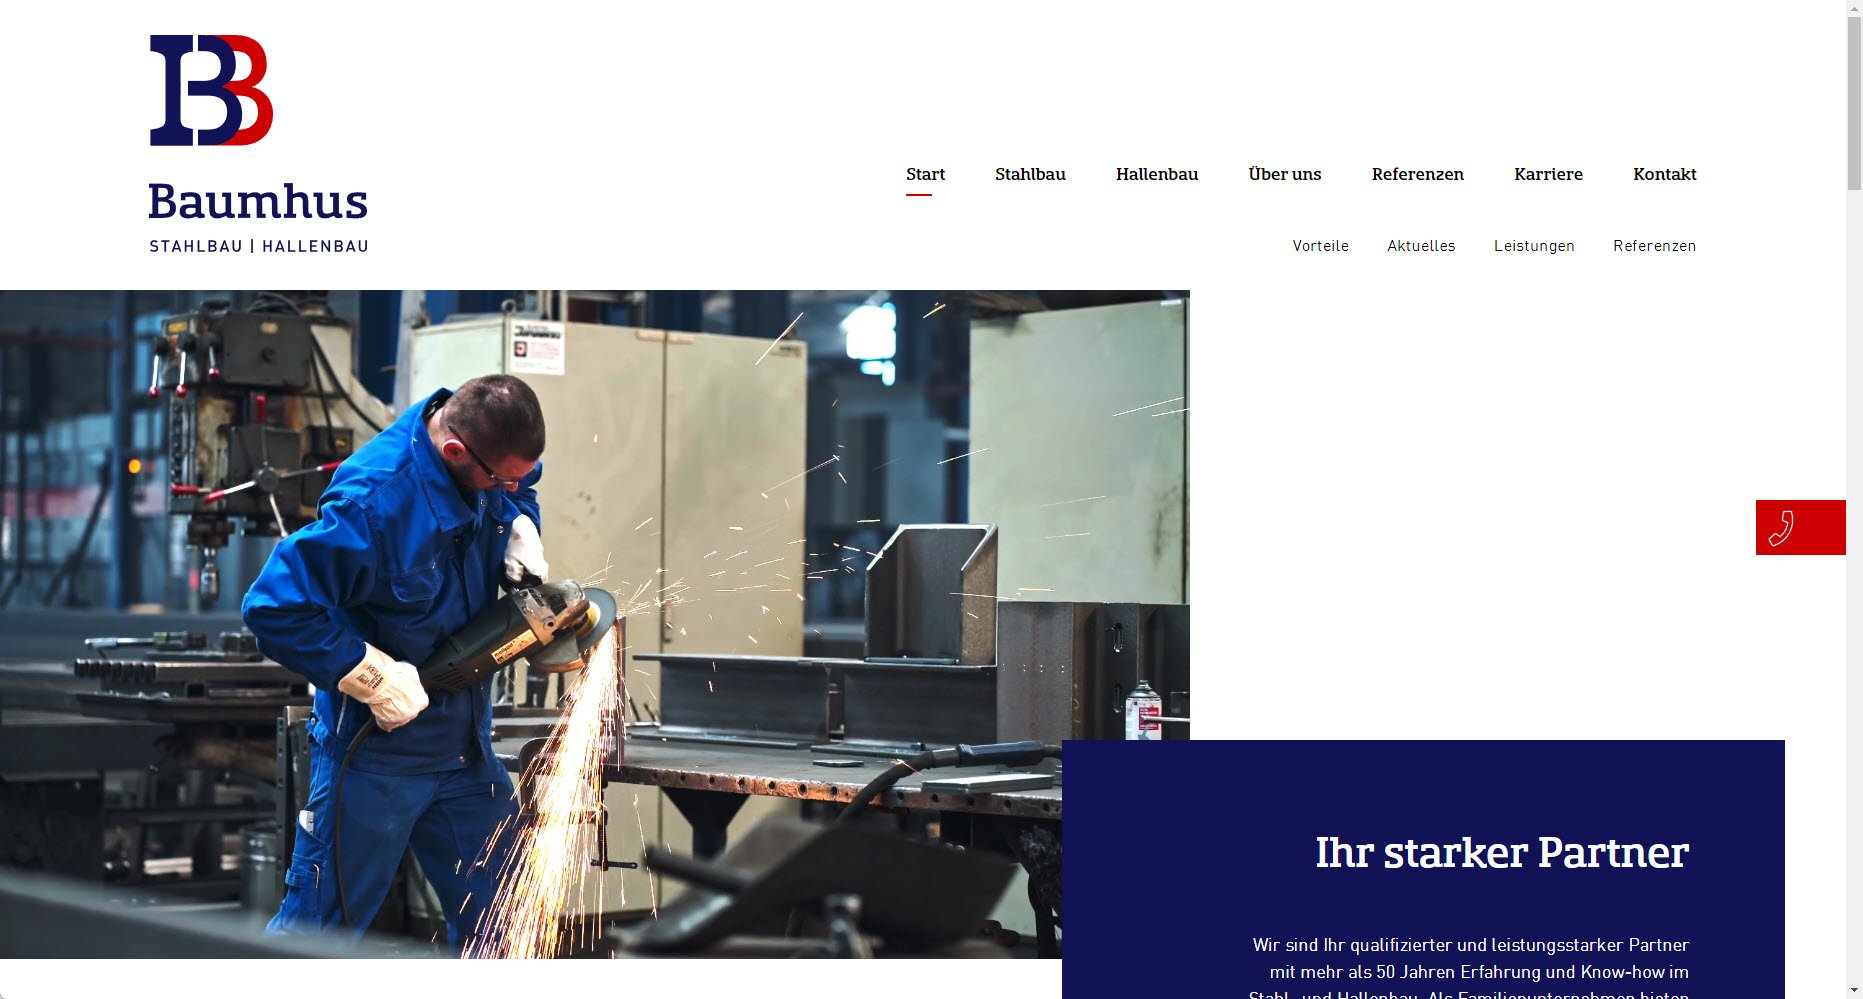 Bernhard Baumhus GmbH & Co. KG